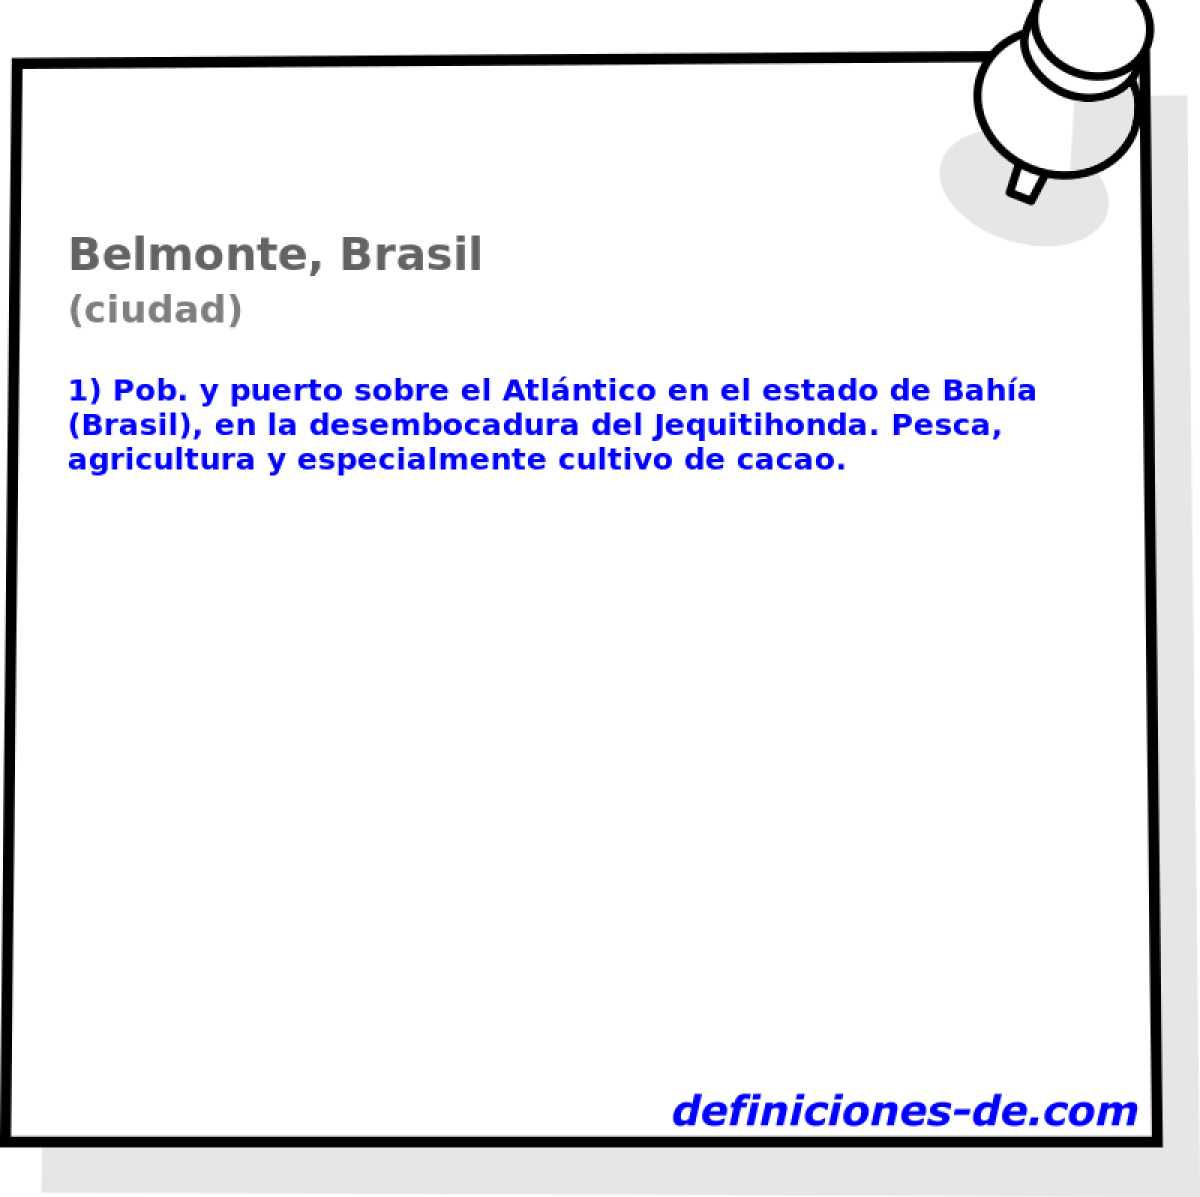 Belmonte, Brasil (ciudad)